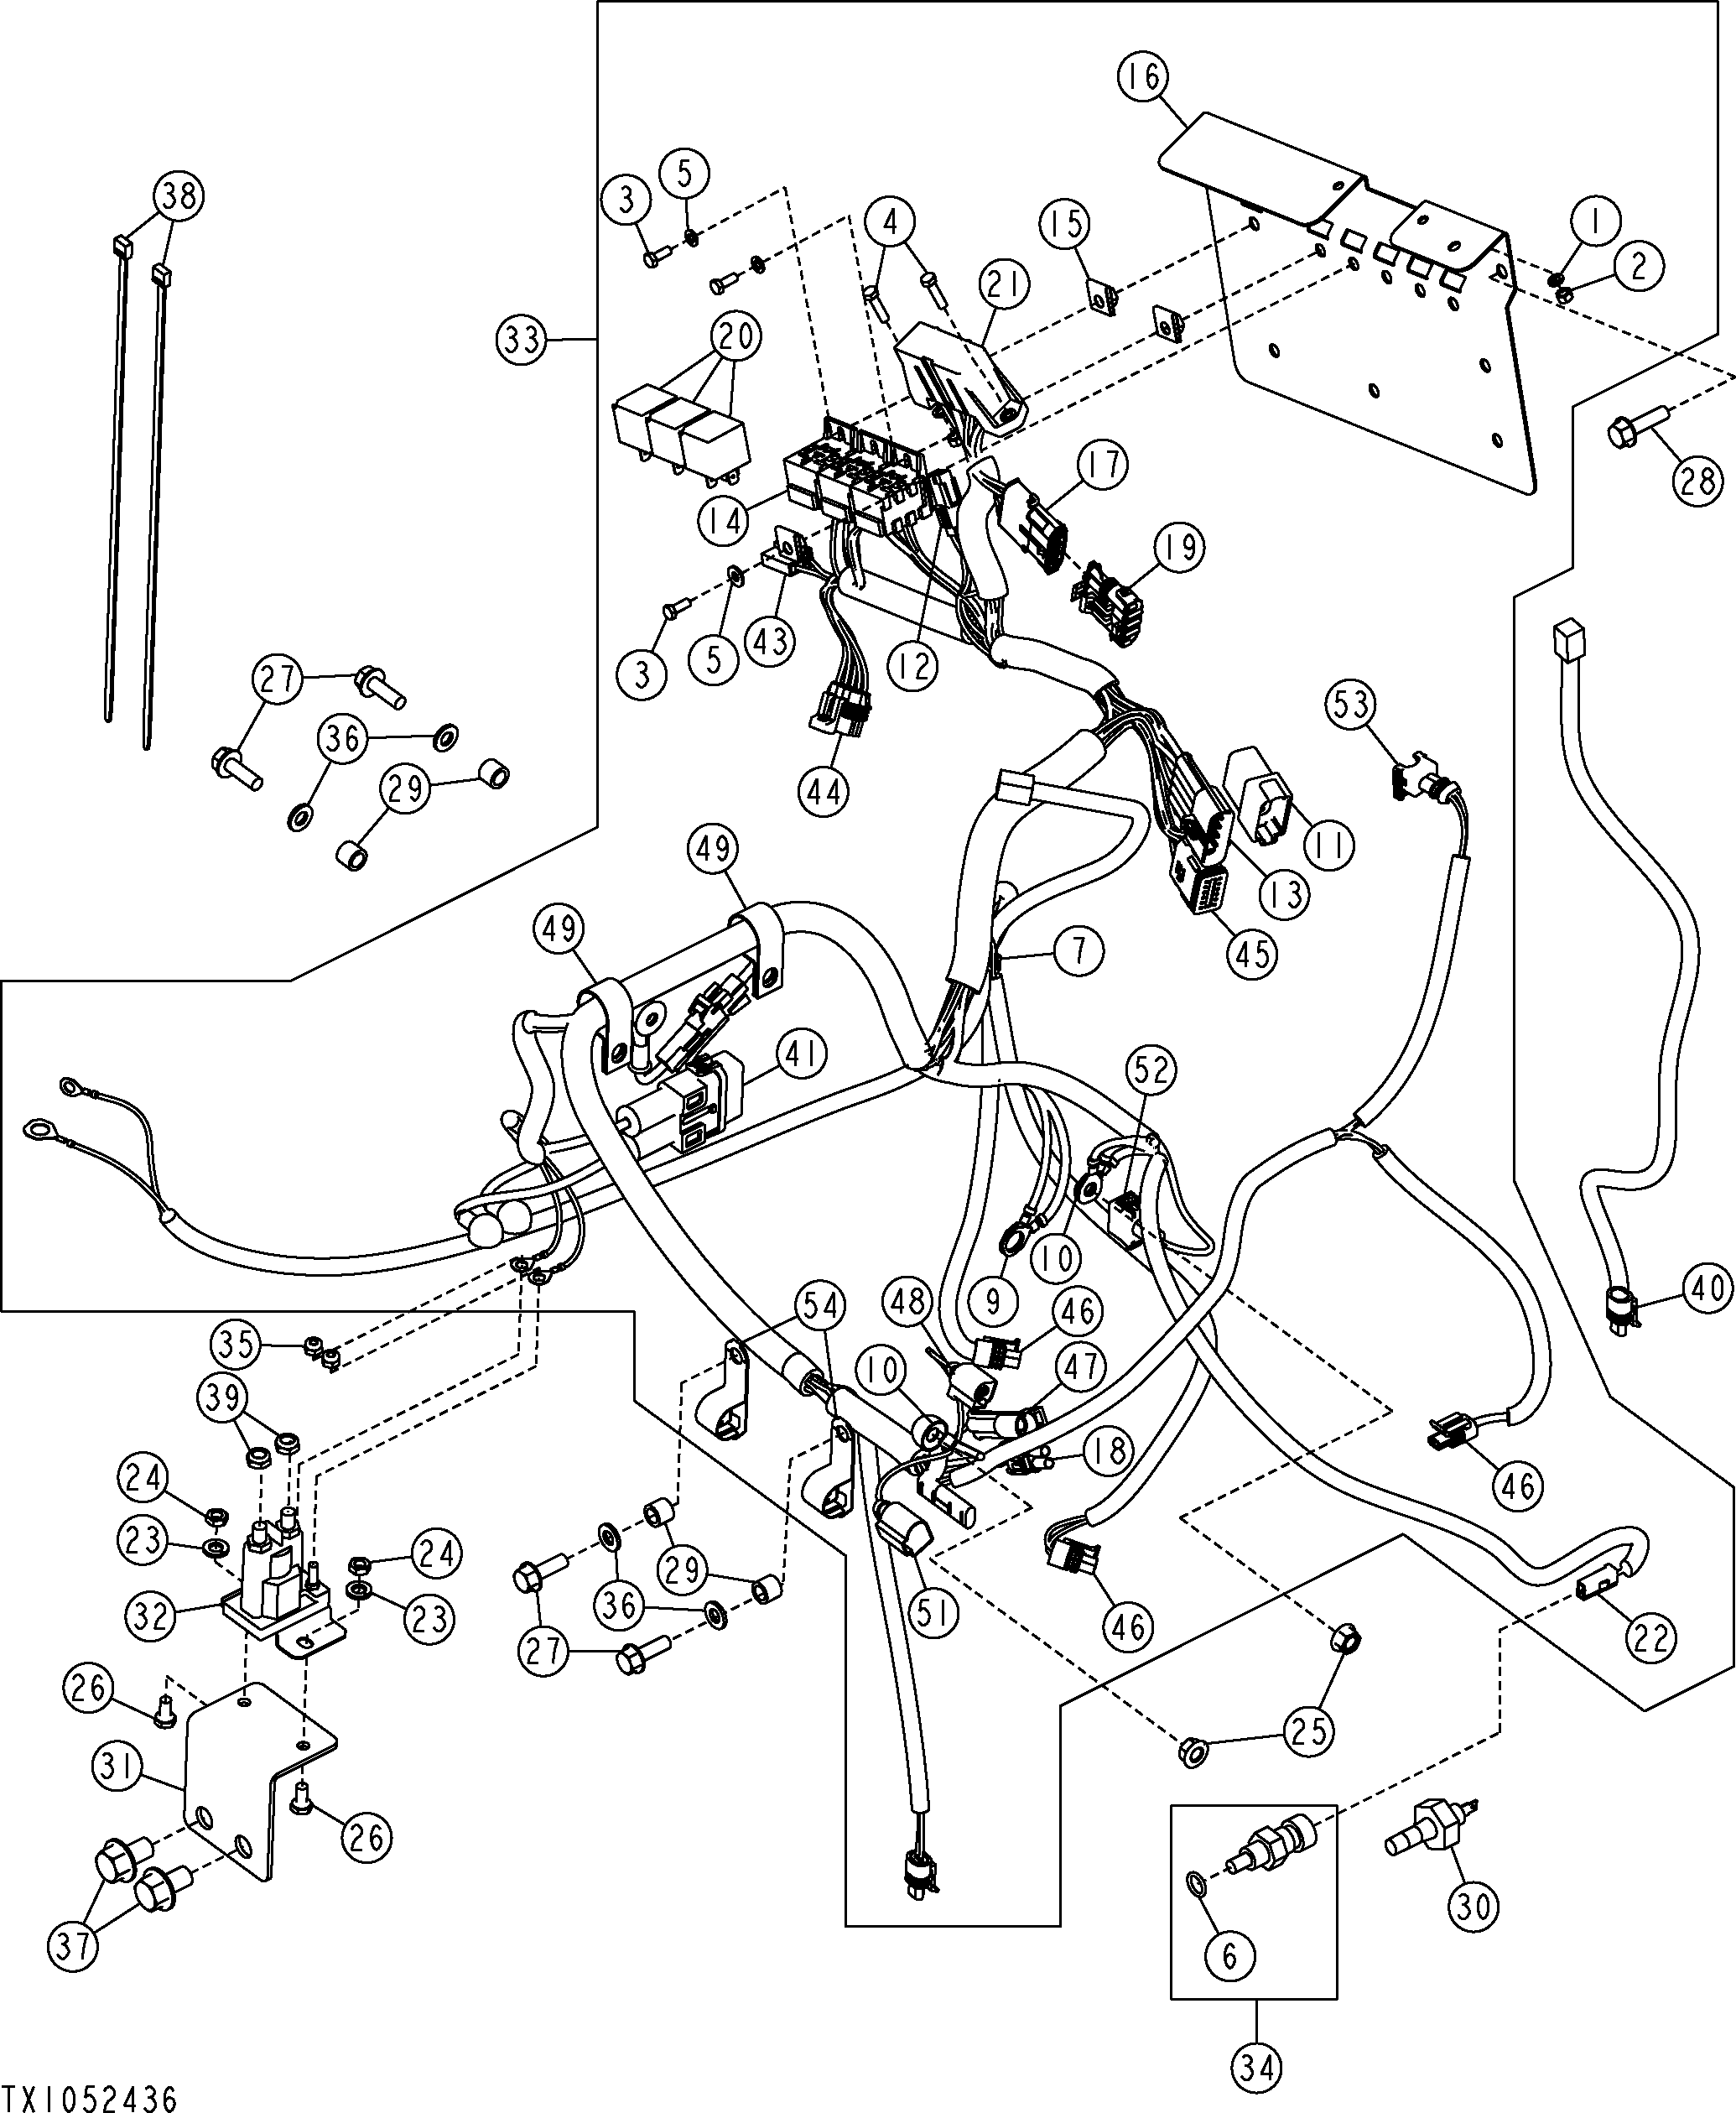 gehl bobcat starter wiring diagram